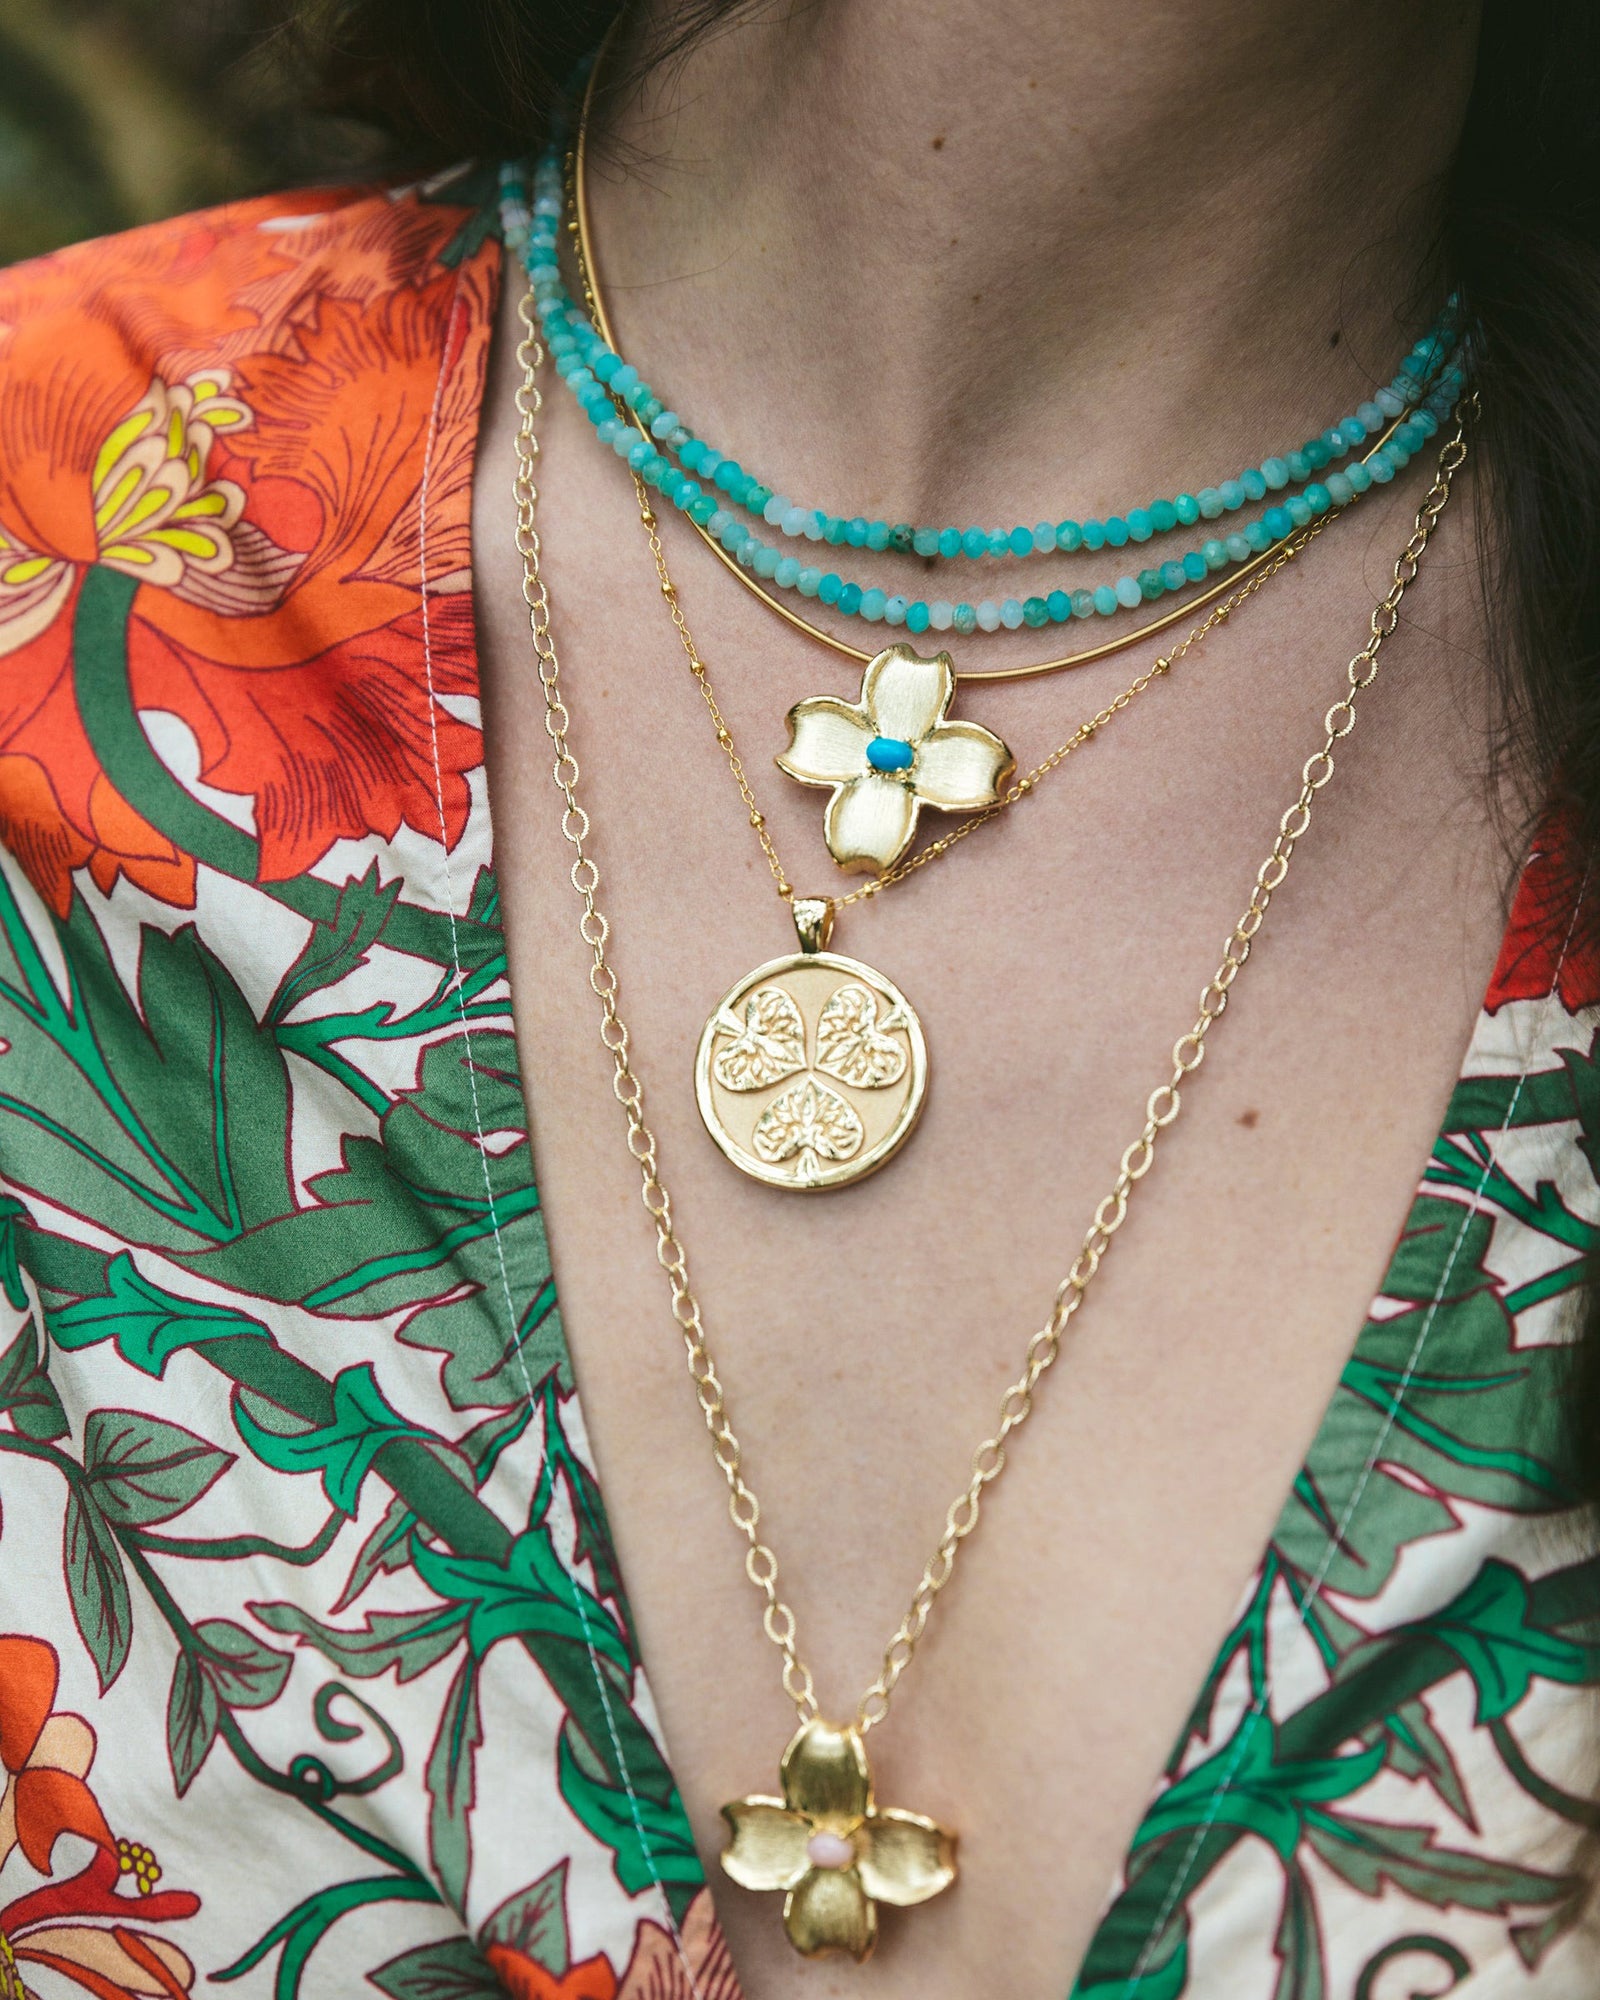 Jane Win JOY Dogwood Flower Pendant Necklace with Turquoise